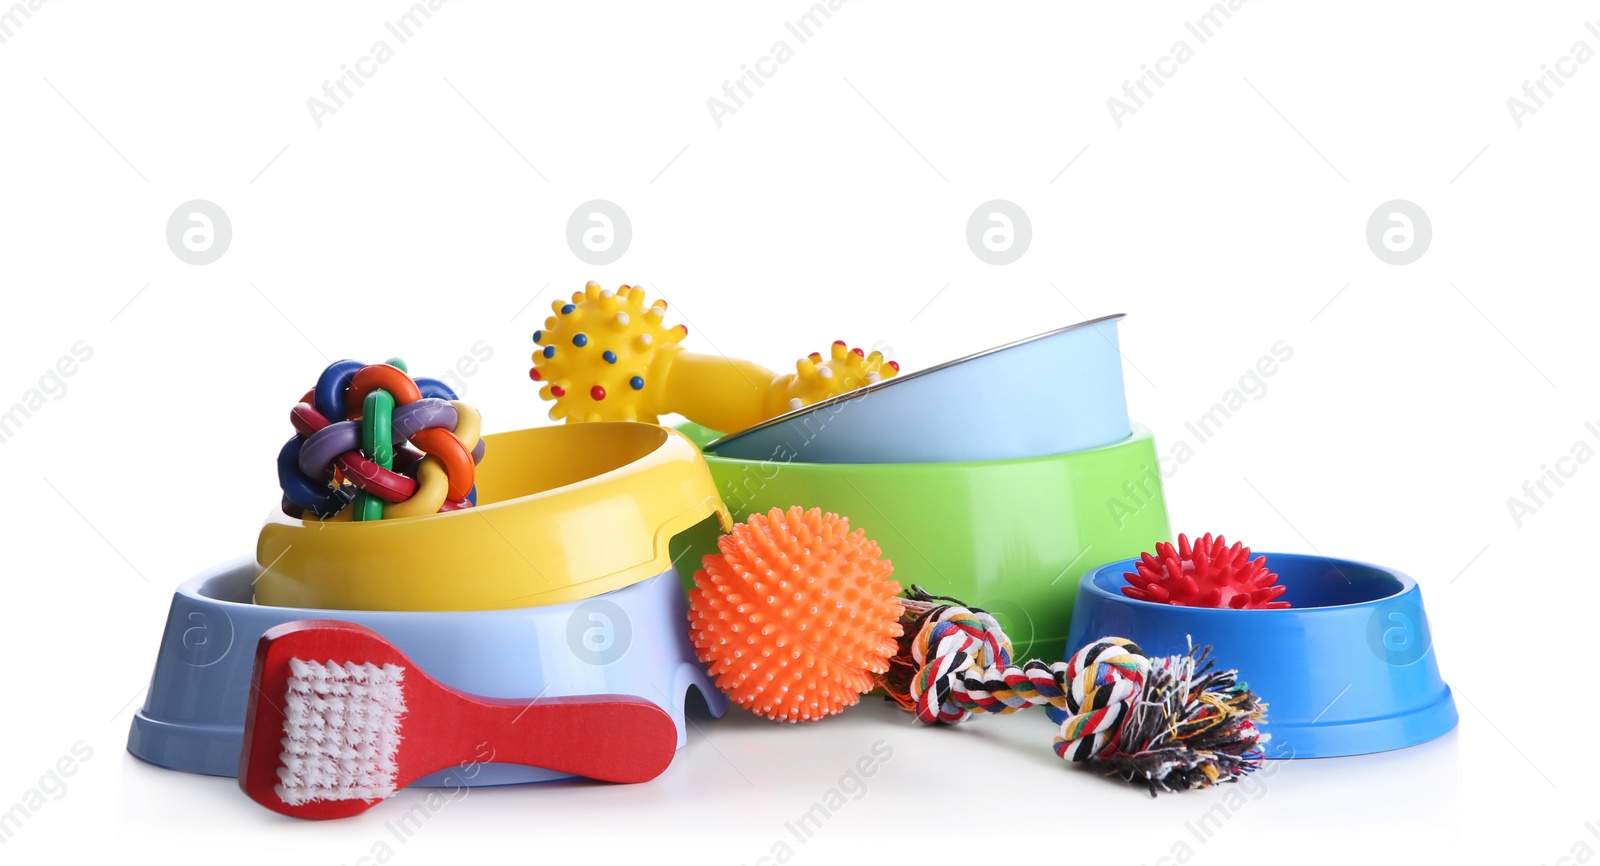 Photo of Feeding bowls, brush and dog toys on white background